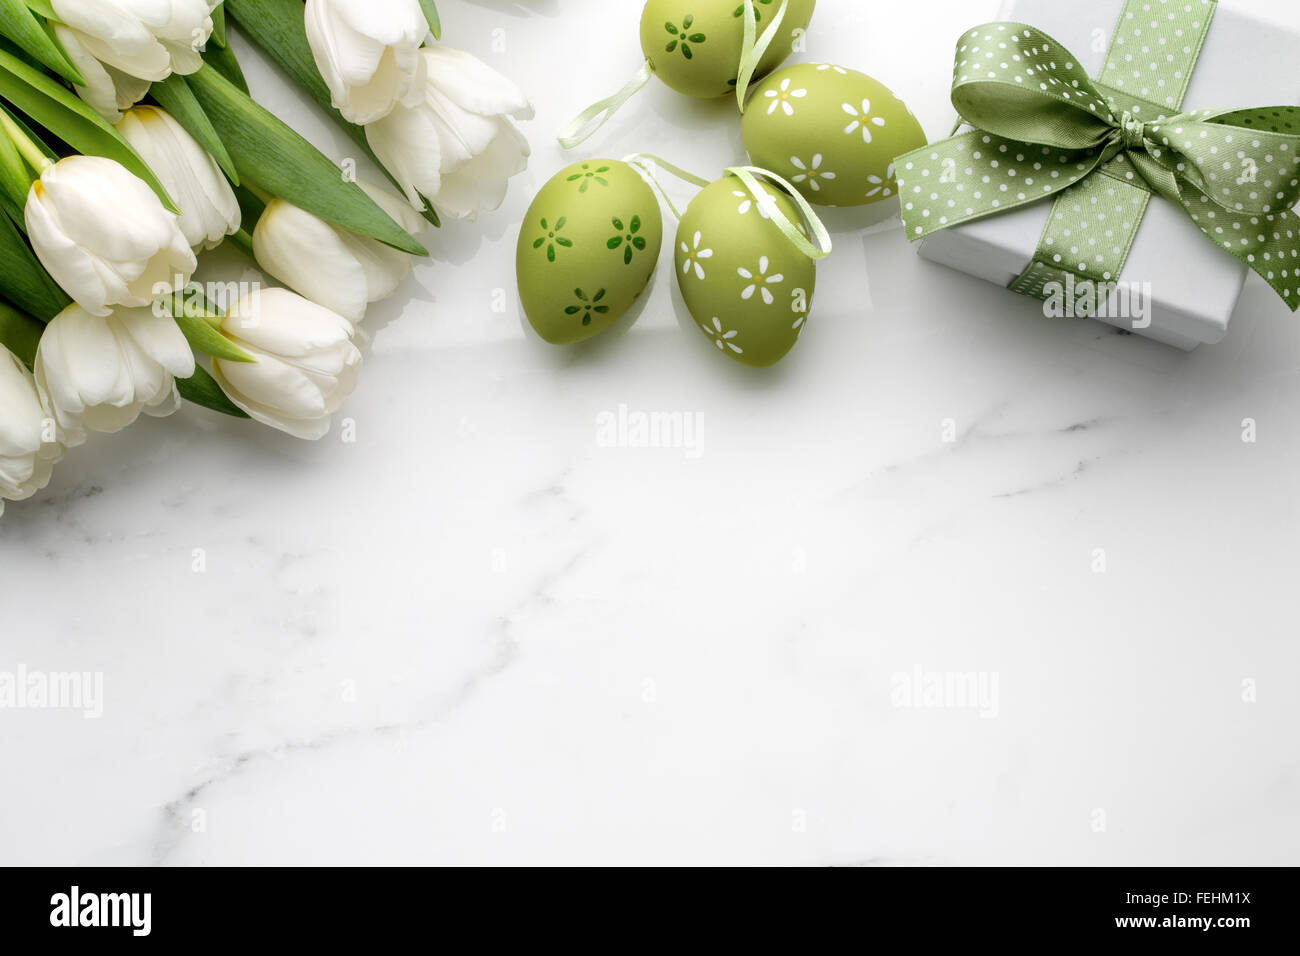 Oeufs de Pâques,tulipes et boîte-cadeau sur le marbre blanc Banque D'Images